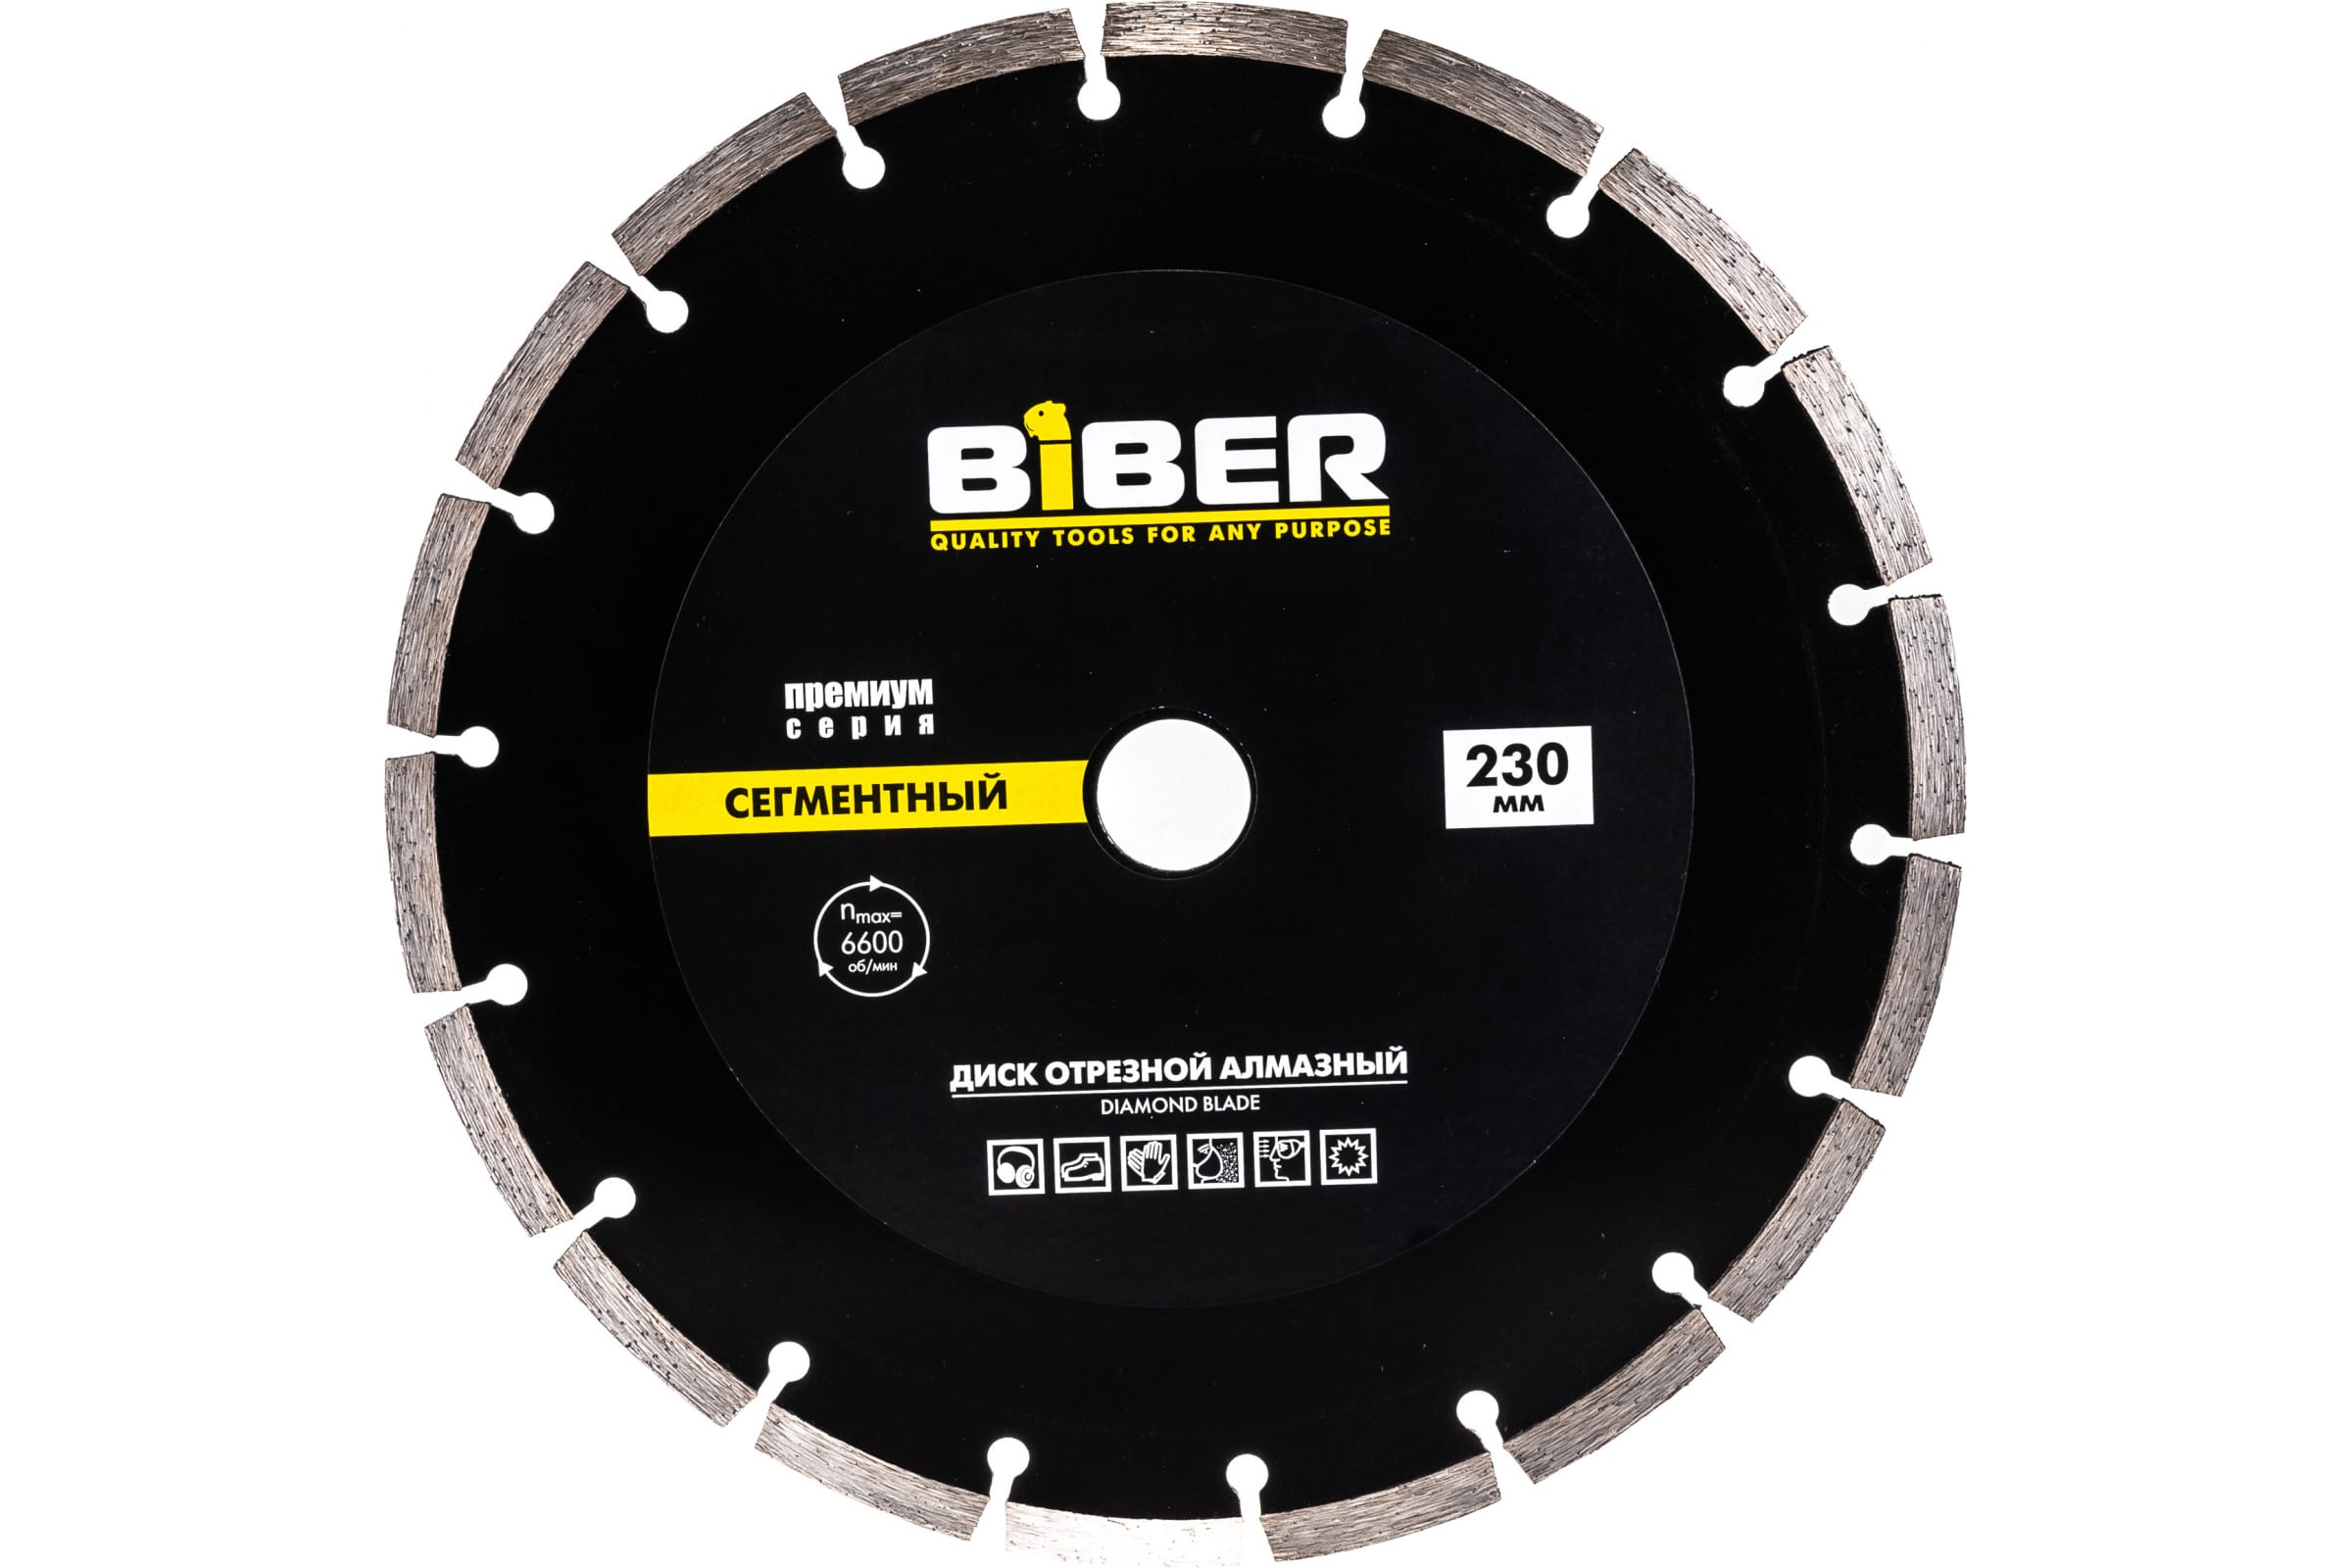 Biber Диск алмазный сегментный Премиум 230мм 70266 тов-039554 универсальный опорный диск для шлифовальной бумаги biber